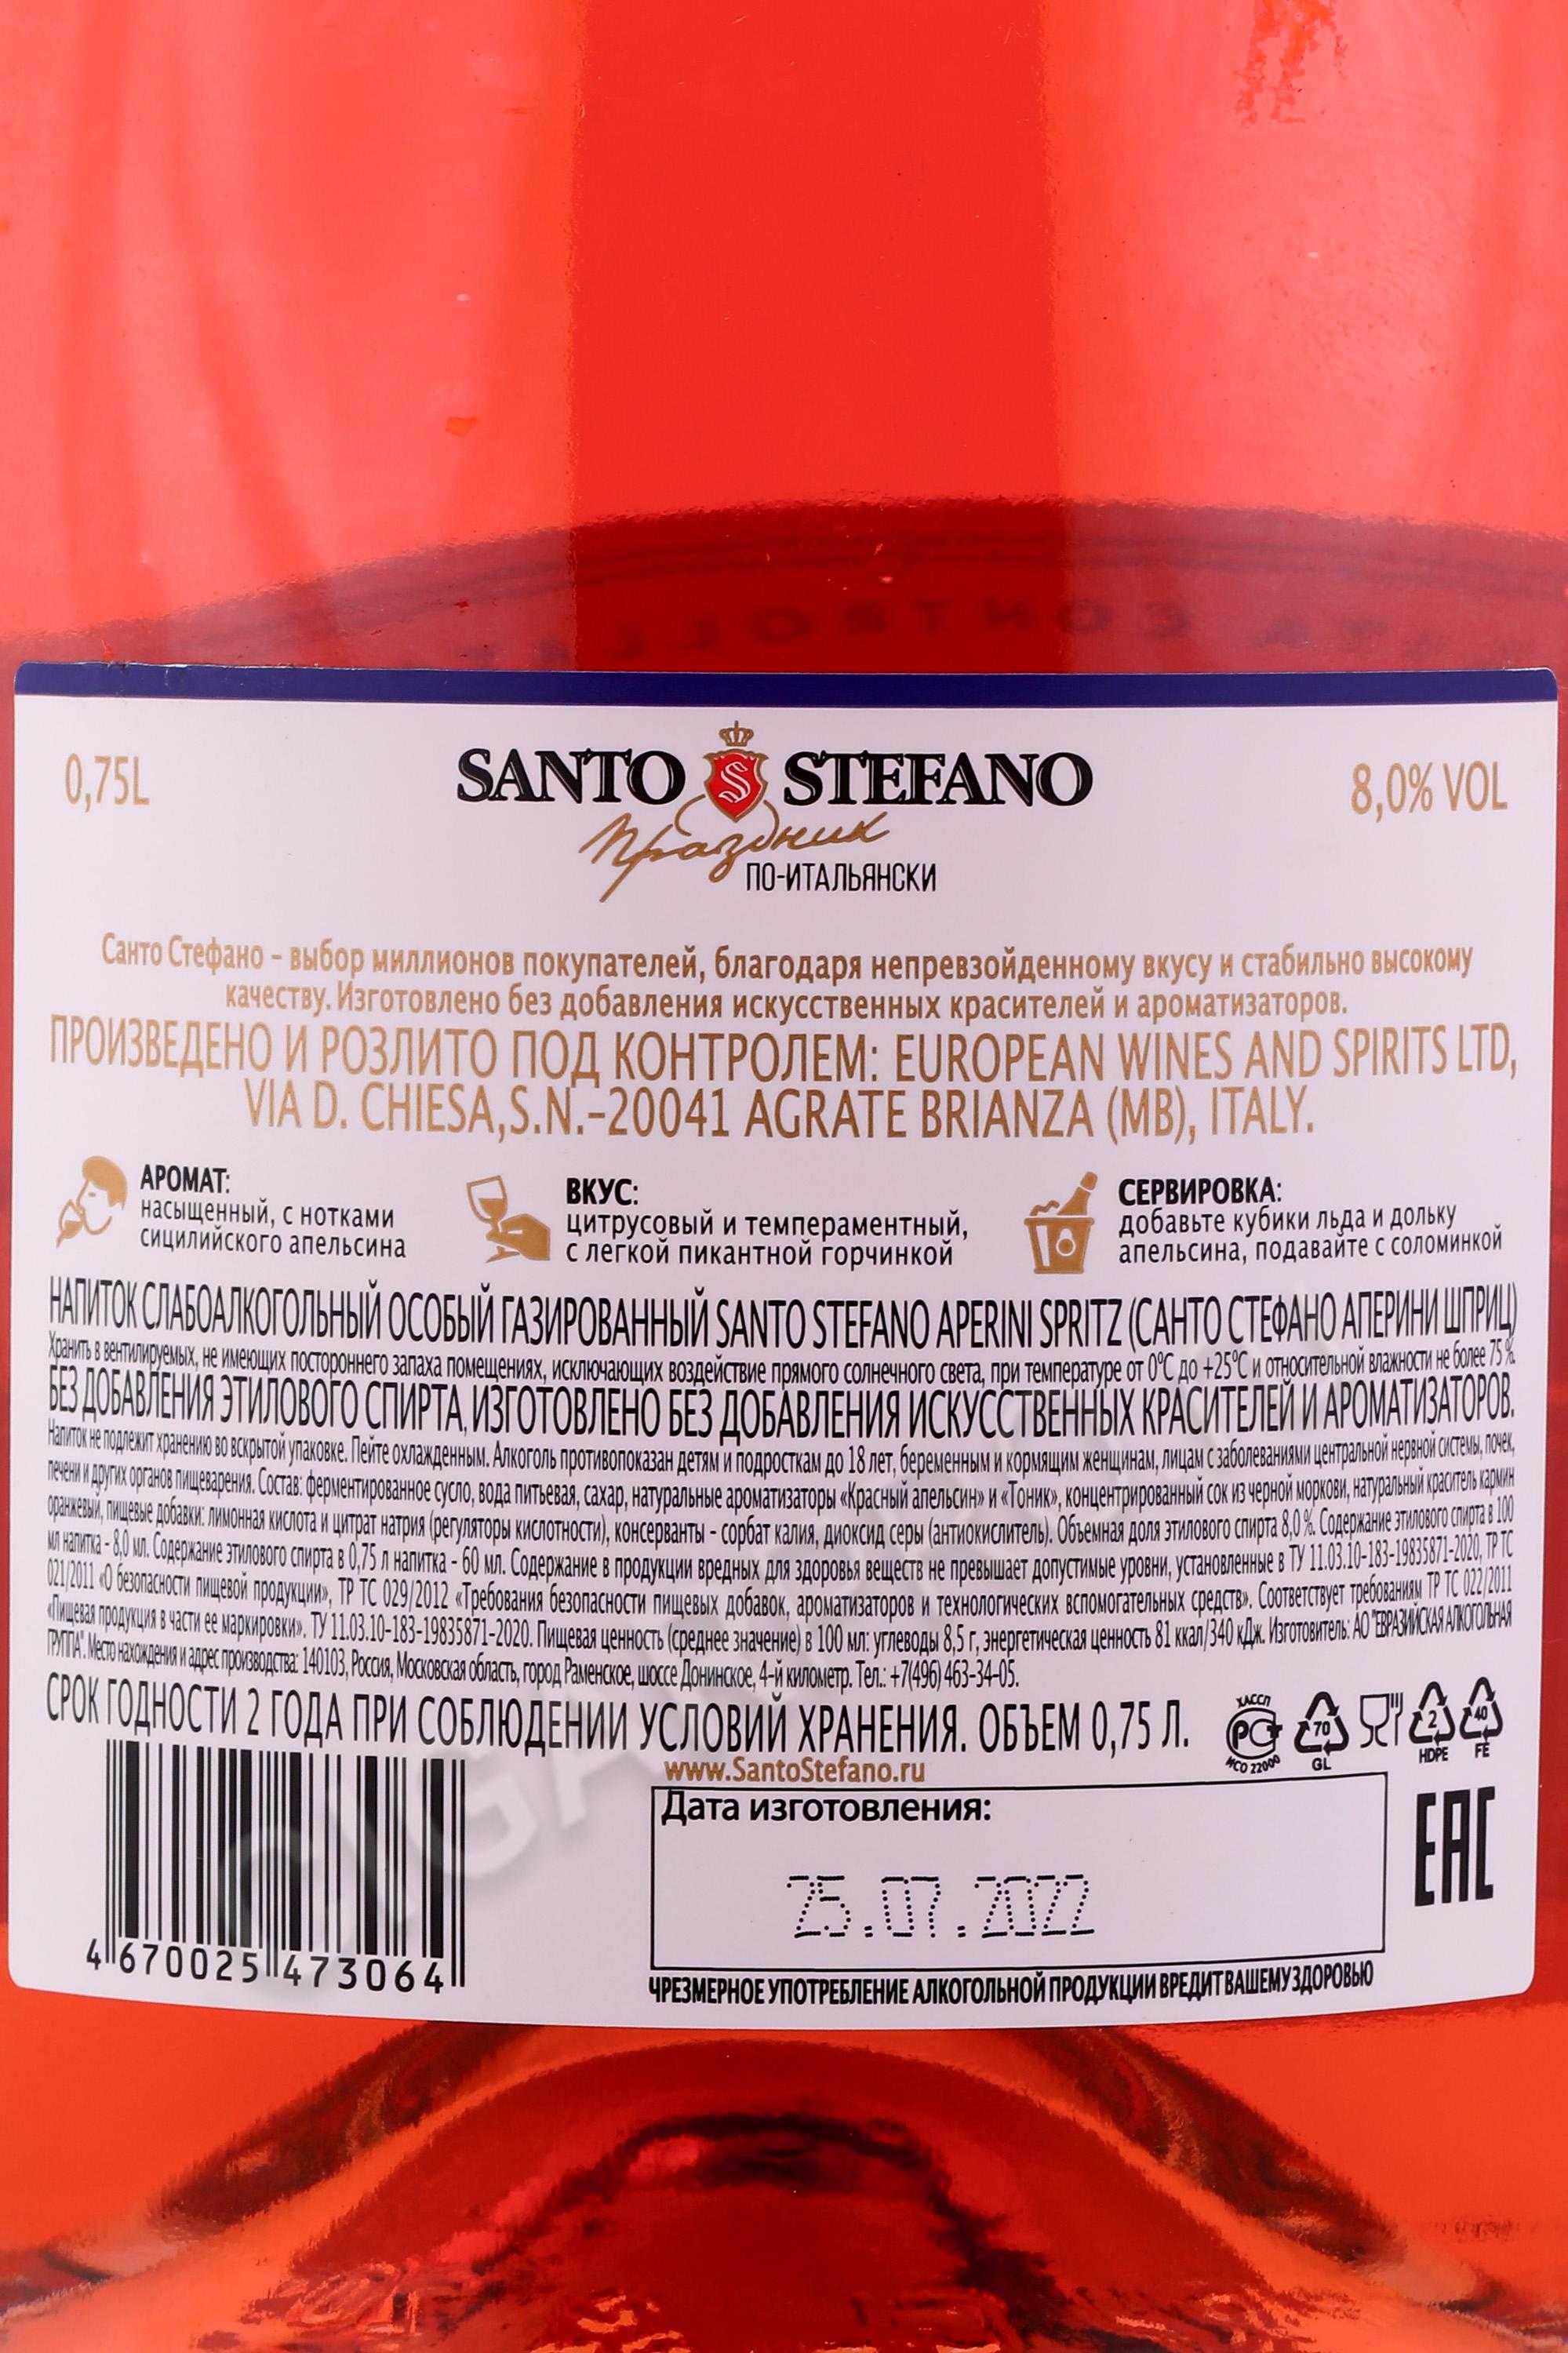 Как отличить настоящее шампанское санто стефано («santo stefano») от подделки